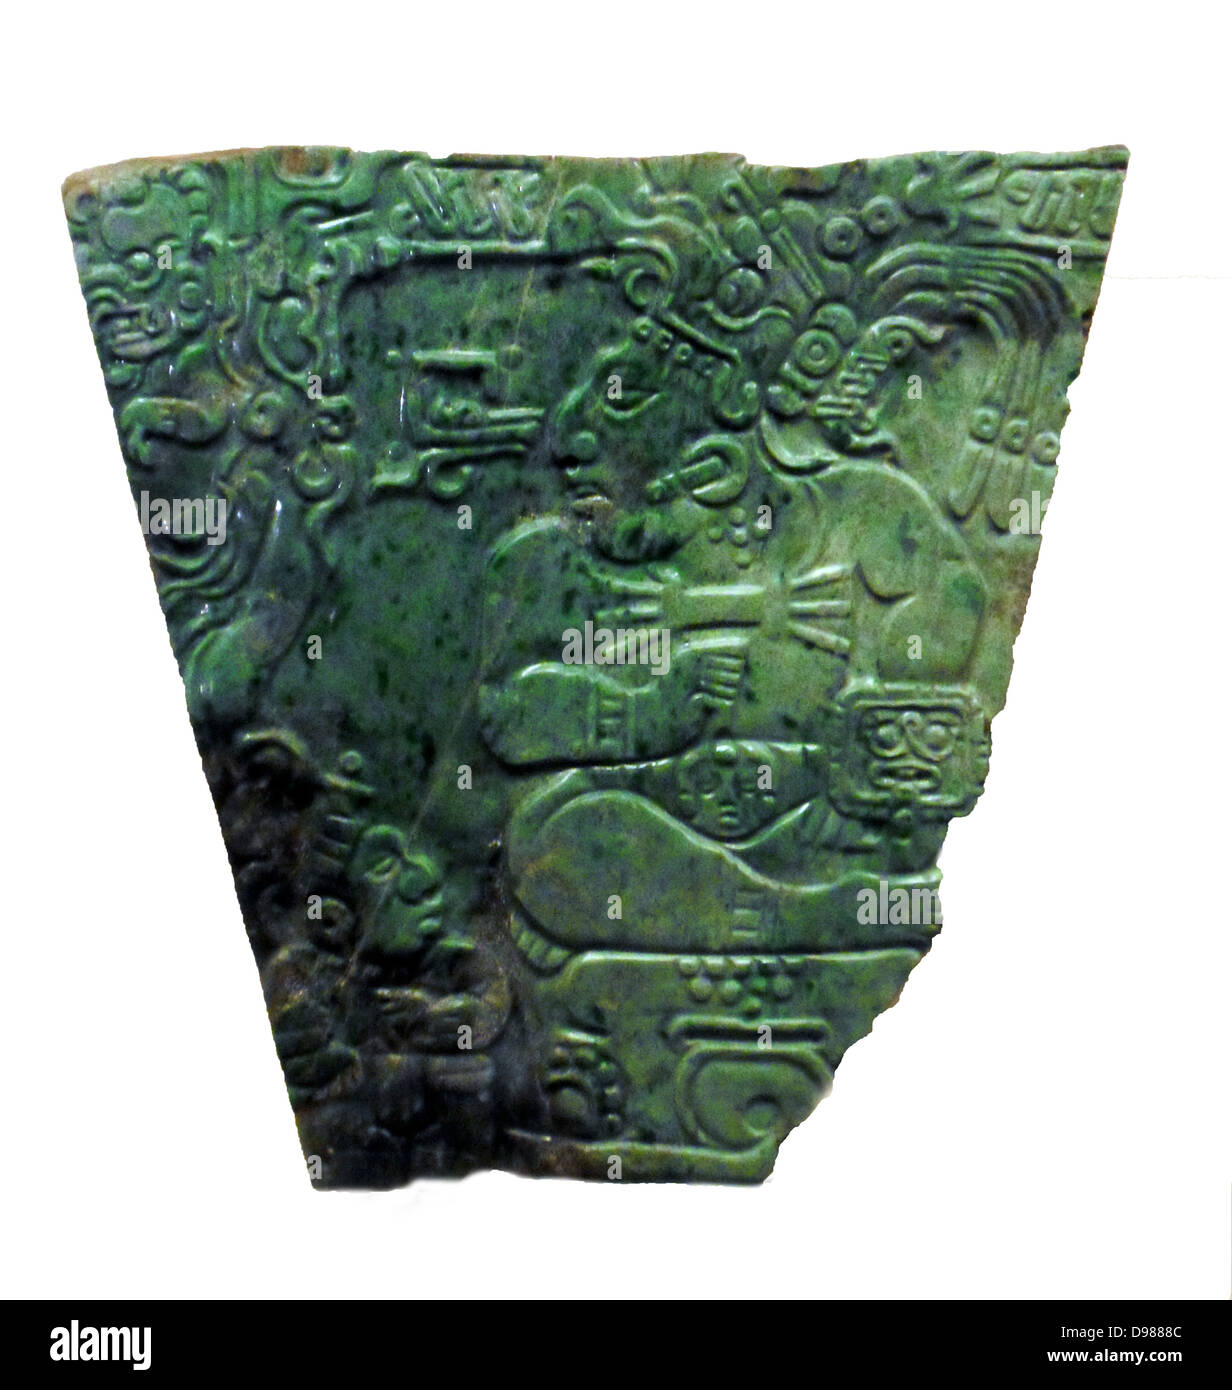 Plaque de Jade d'un roi Maya, Maya période Classique (600-900 AD) Teotihuacan, au Mexique. La scène sur cette plaque, sculptés dans la soi-disant "style Nebaj, montre une Maya seigneur ou roi assis sur un trône avec une plus petite figure à ses pieds. Le seigneur porte des boules quies, un grand pectoral, bracelets, brassards, une ceinture avec une tête de cheval et une coiffe zoomorphe décoré de longues plumes. Sur son bras gauche il porte un bouclier avec une représentation de le dieu Jaguar, un dieu des enfers. Banque D'Images